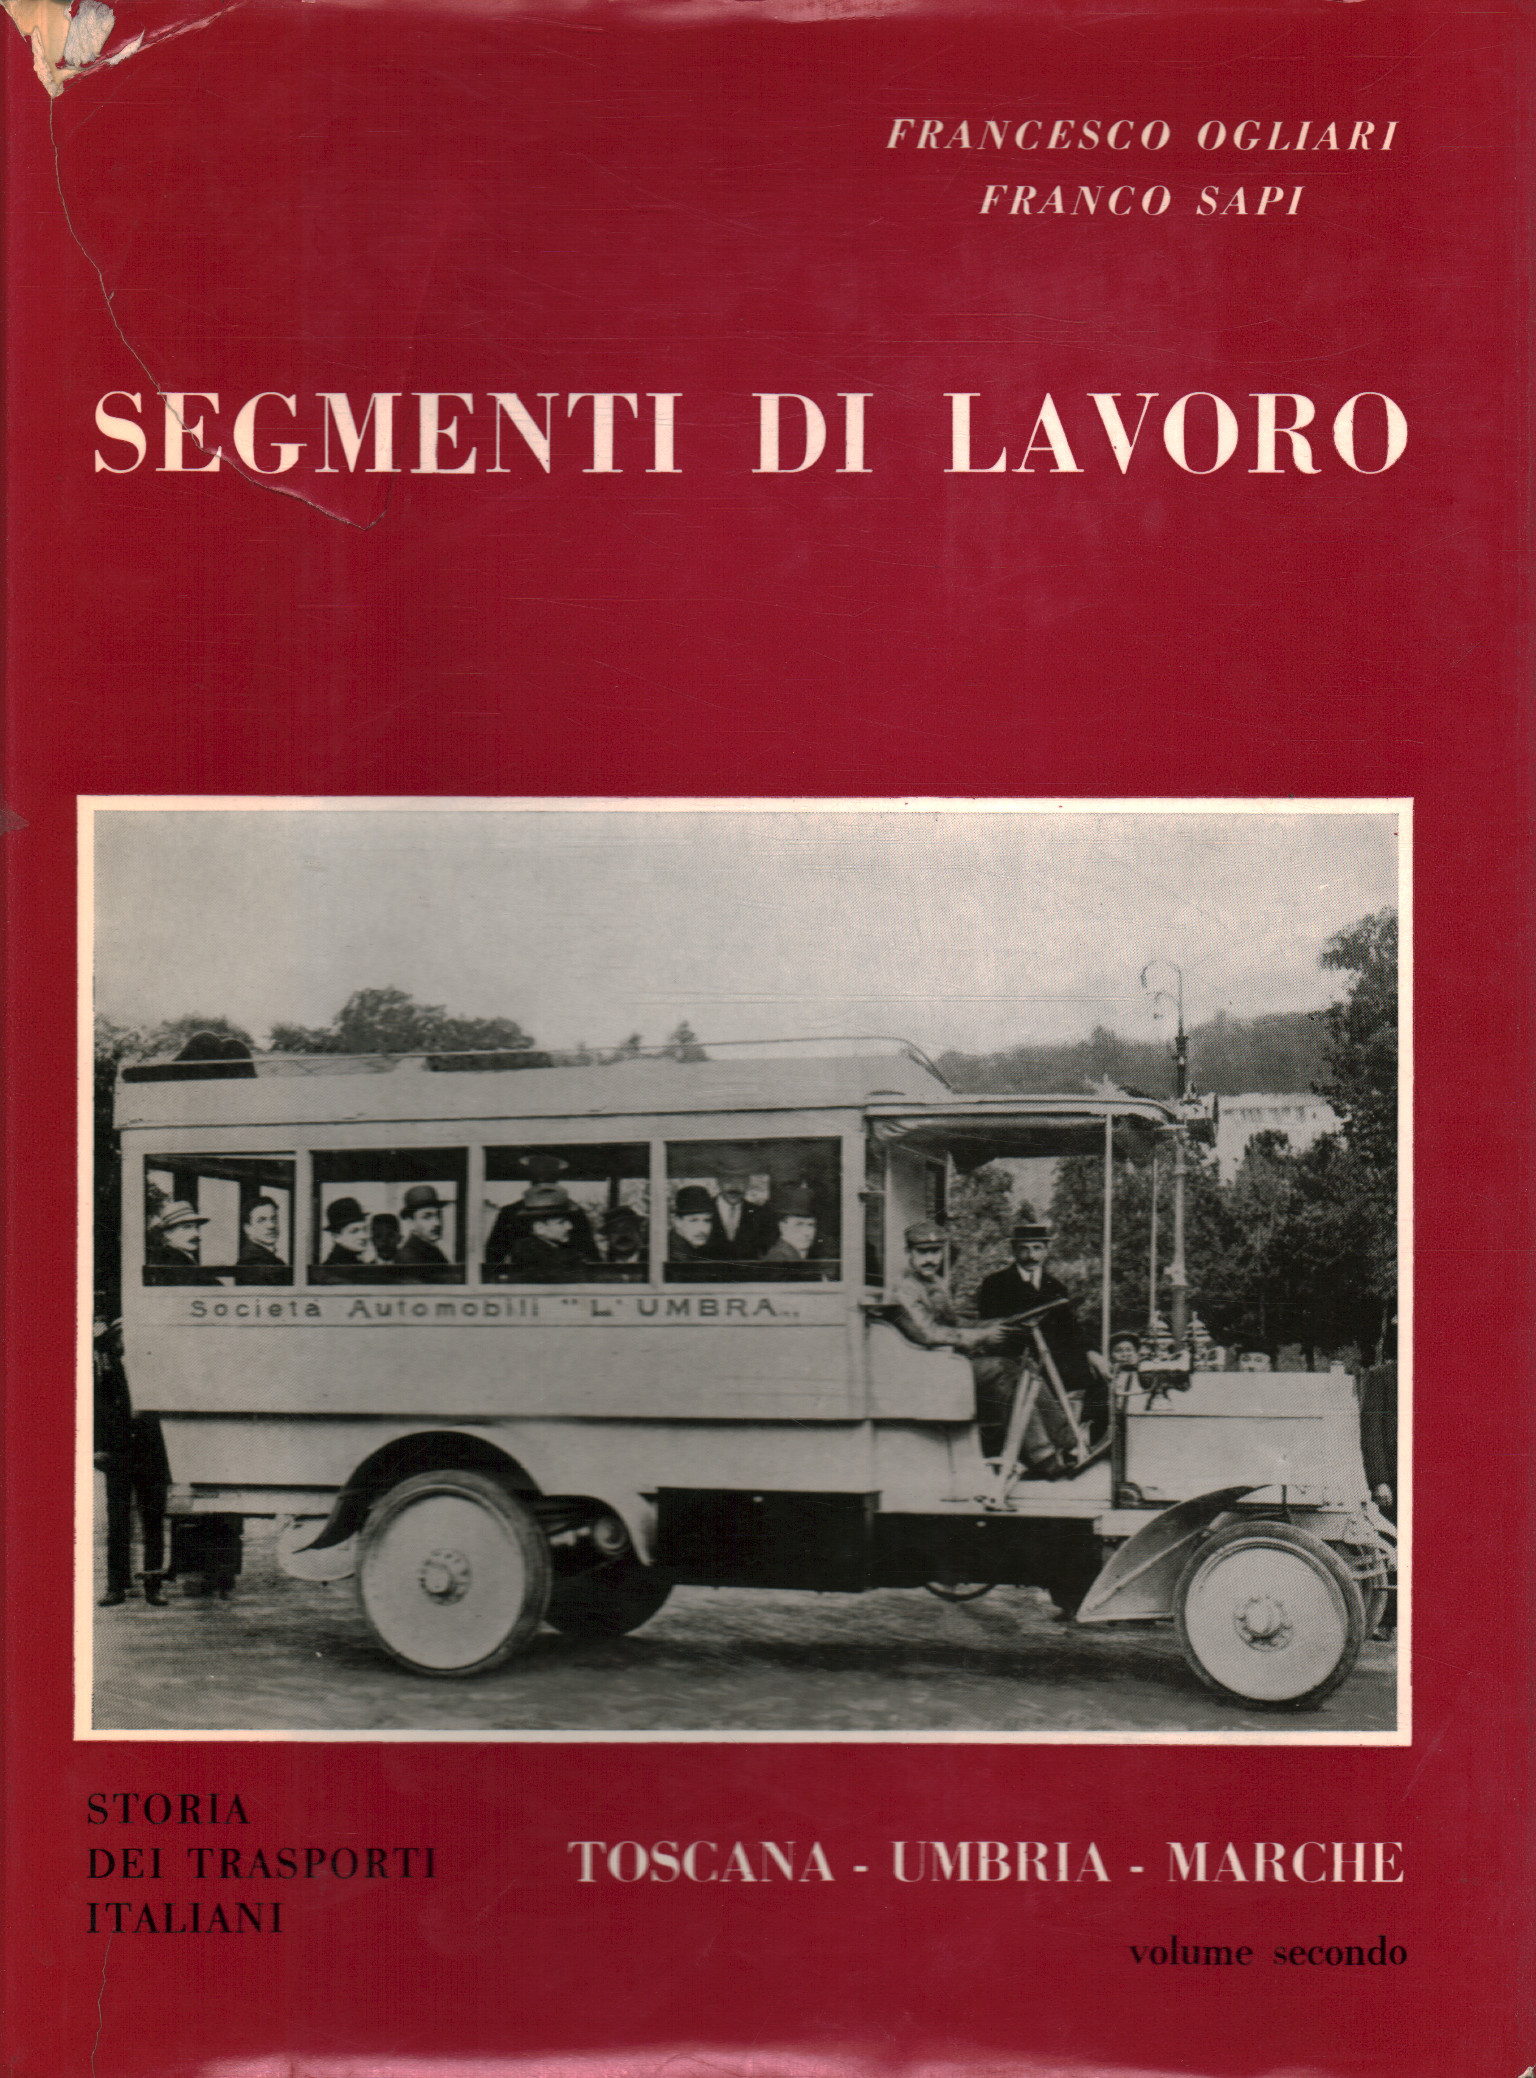 Work segments volume 2, Francesco Ogliari Franco Sapi